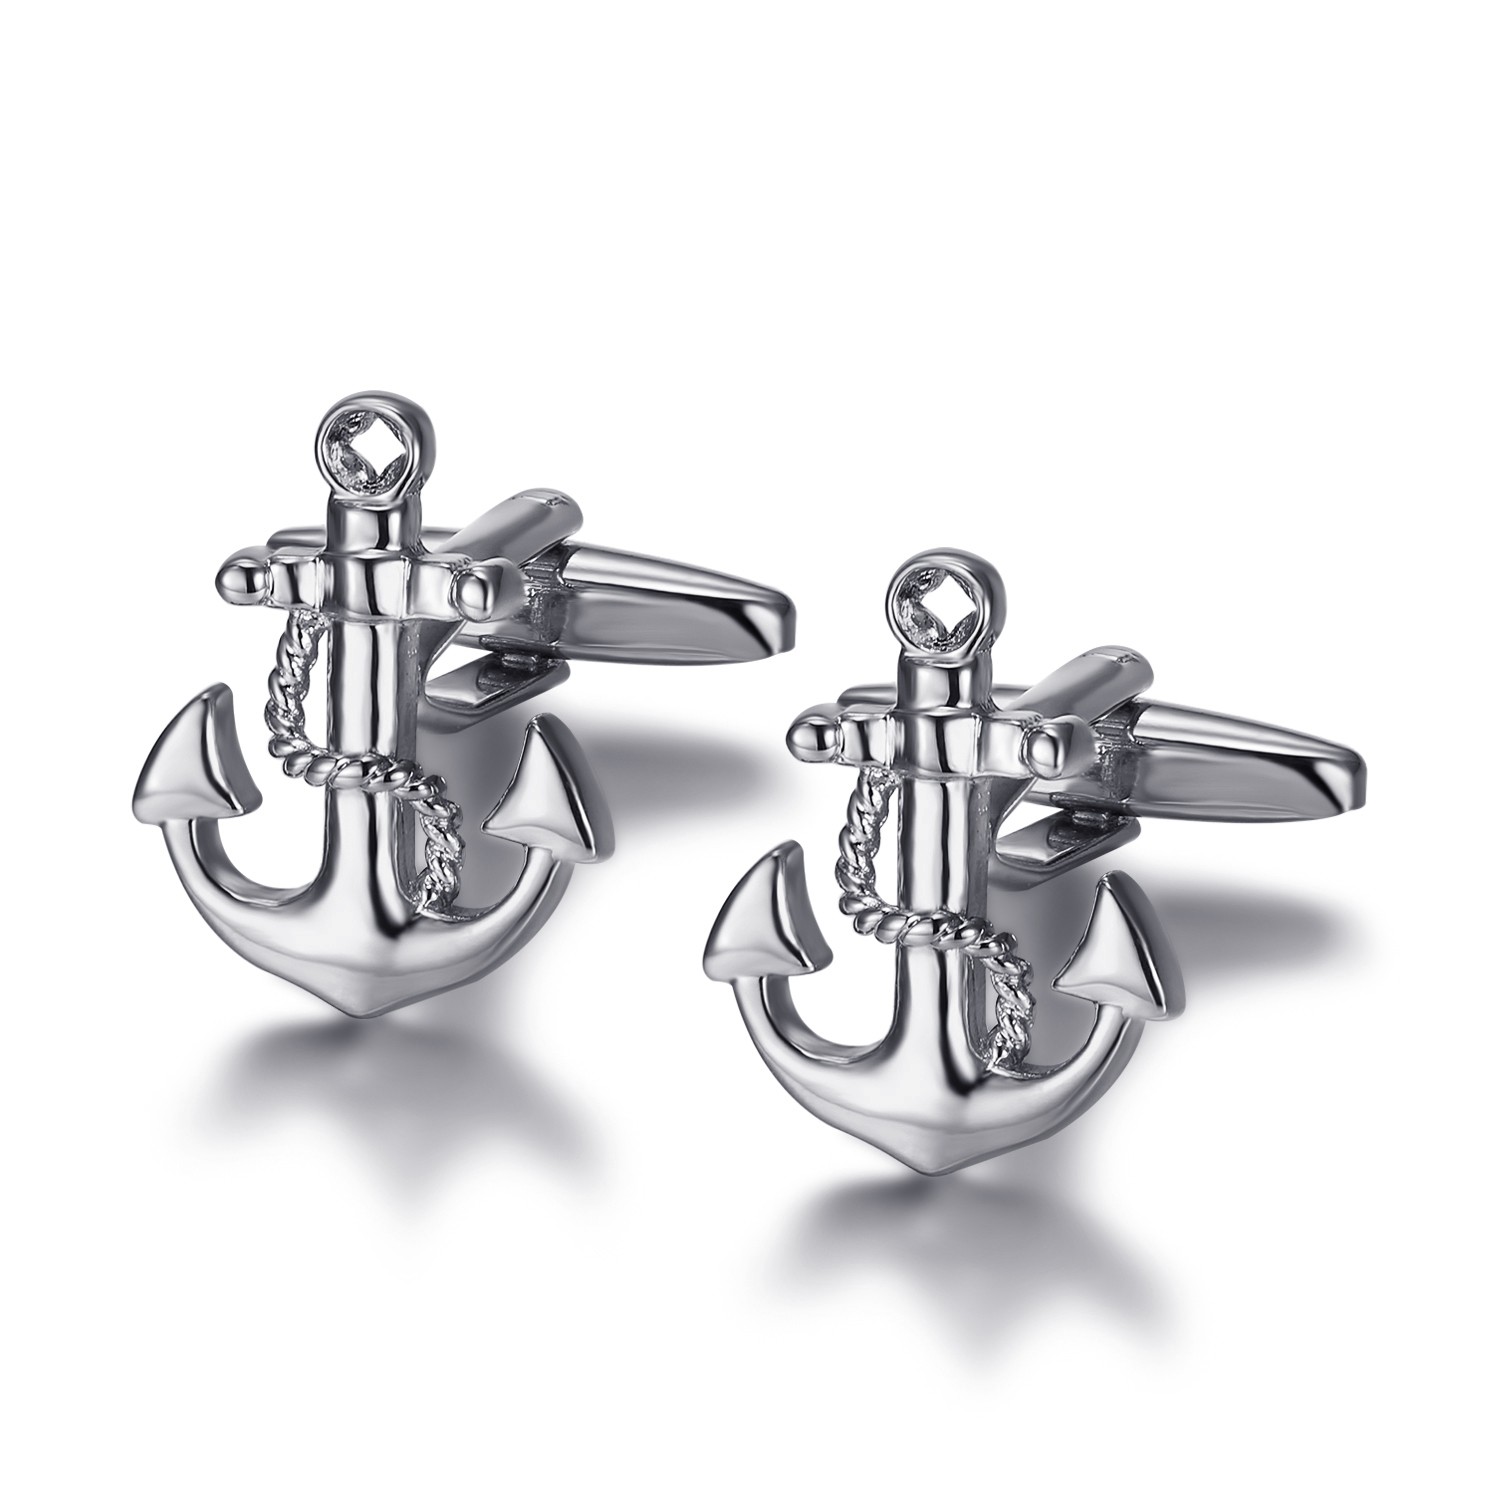 BOBIJOO Jewelry Paire de Boutons de Manchette Ancre Marine Mouillage Esp/érance Argent/é